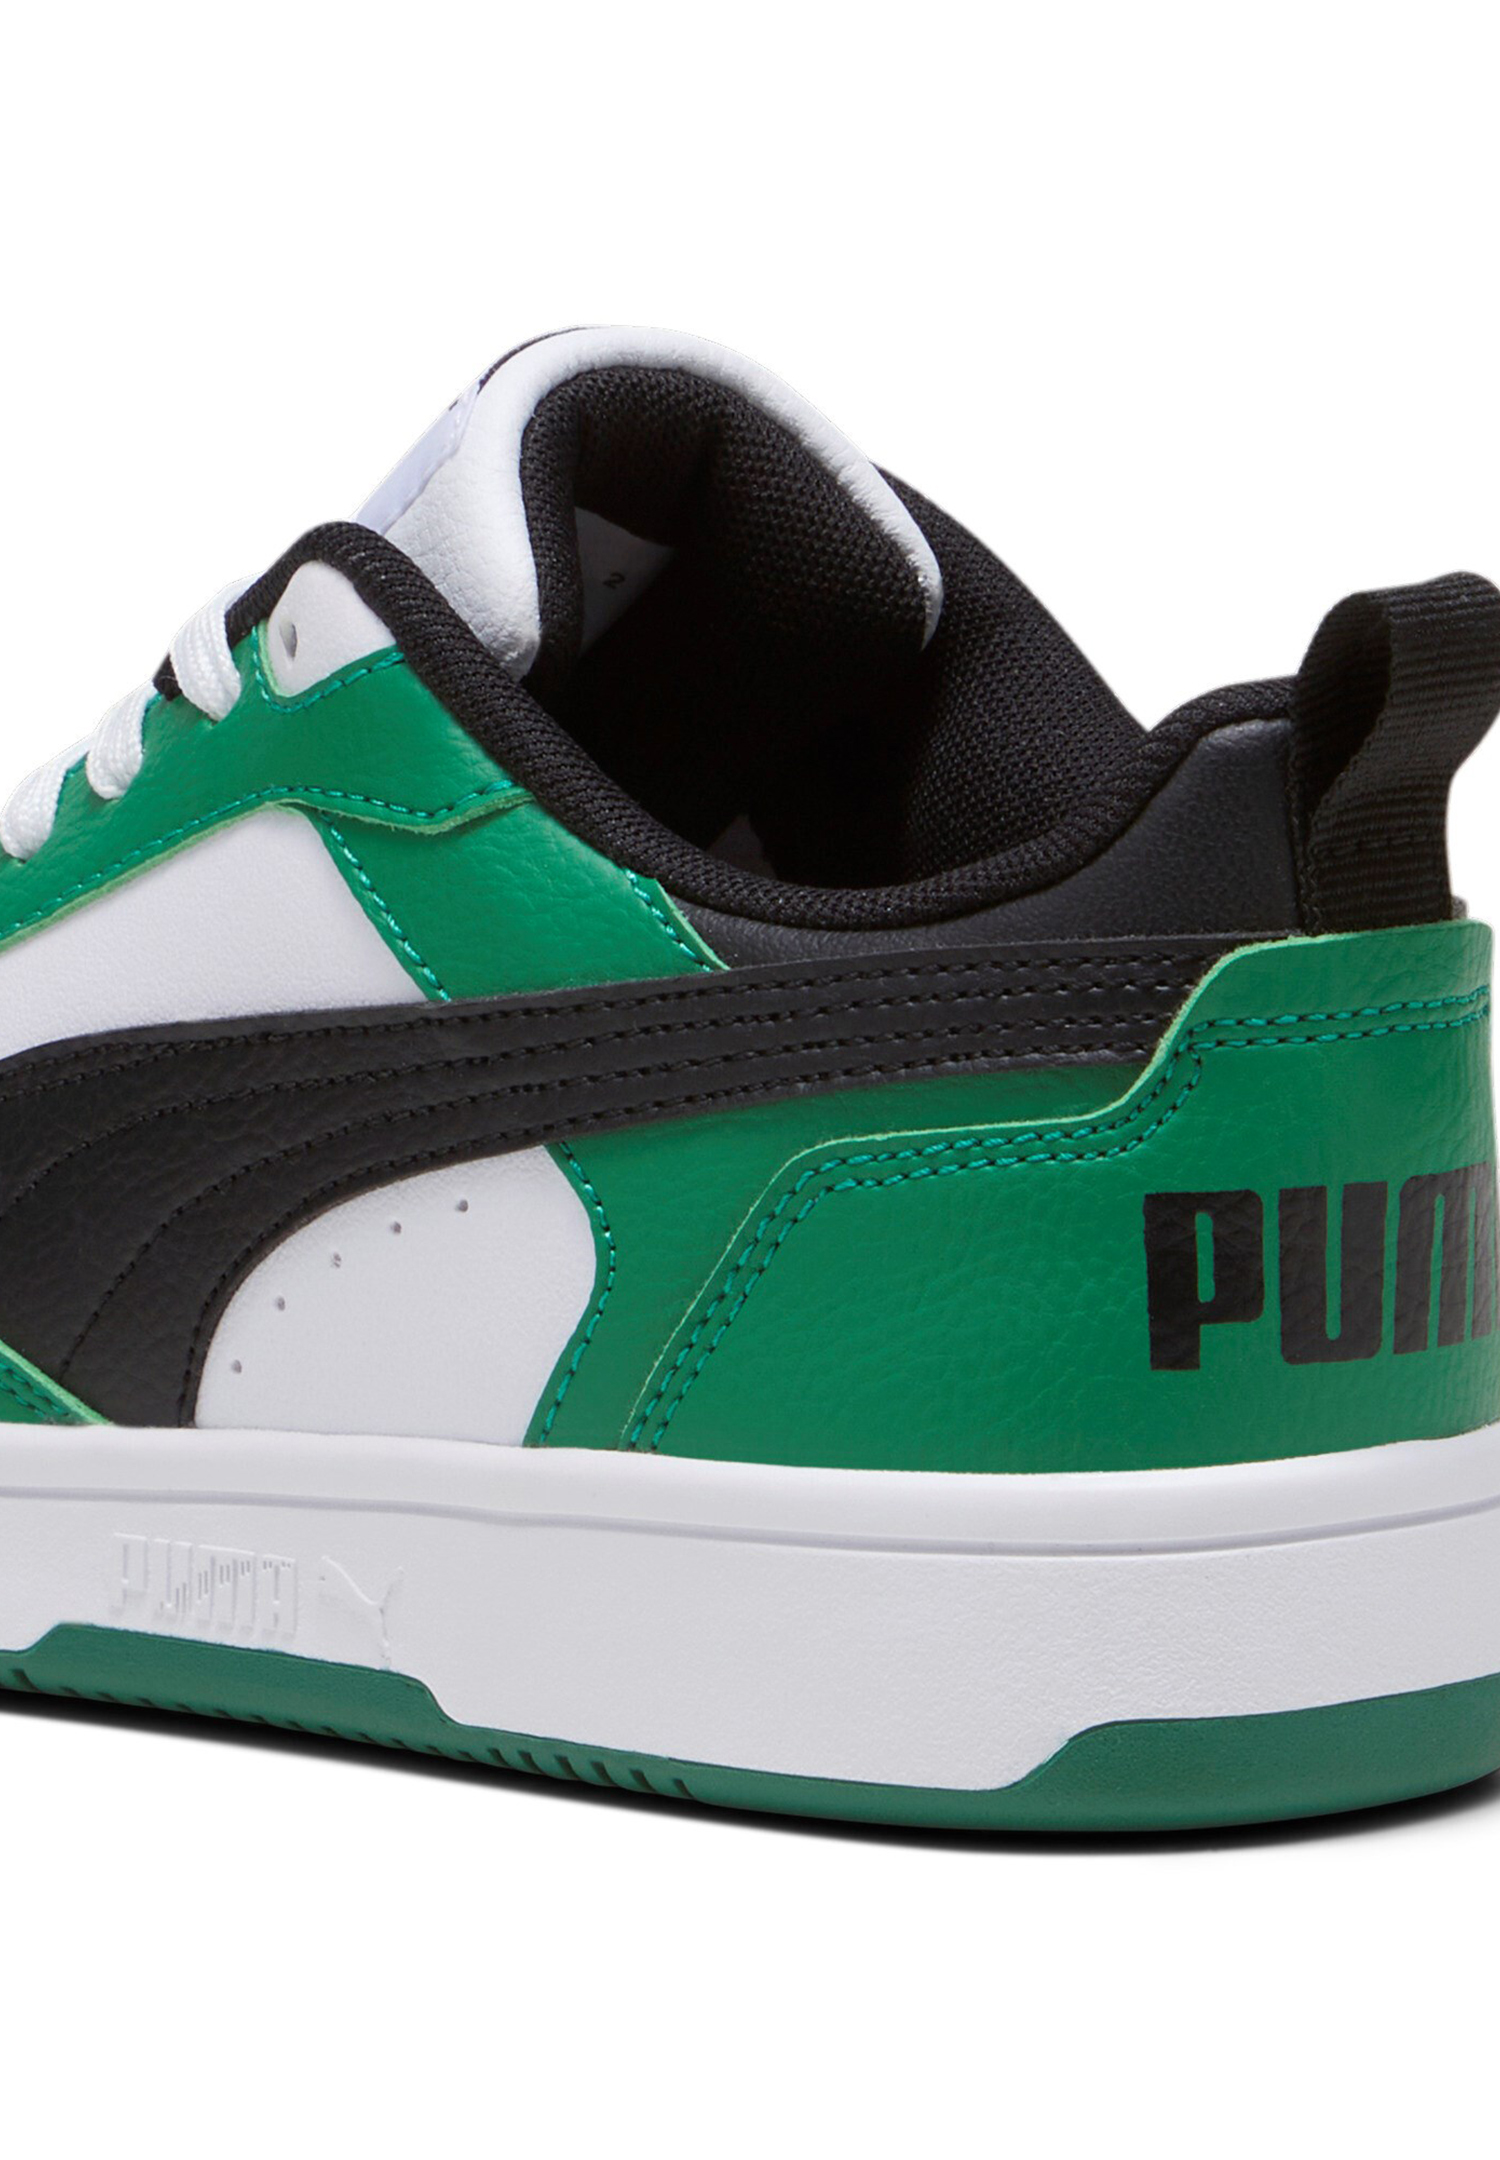 Puma Rebound V6 LOW JR Unisex Kinder Sneaker 393833 05